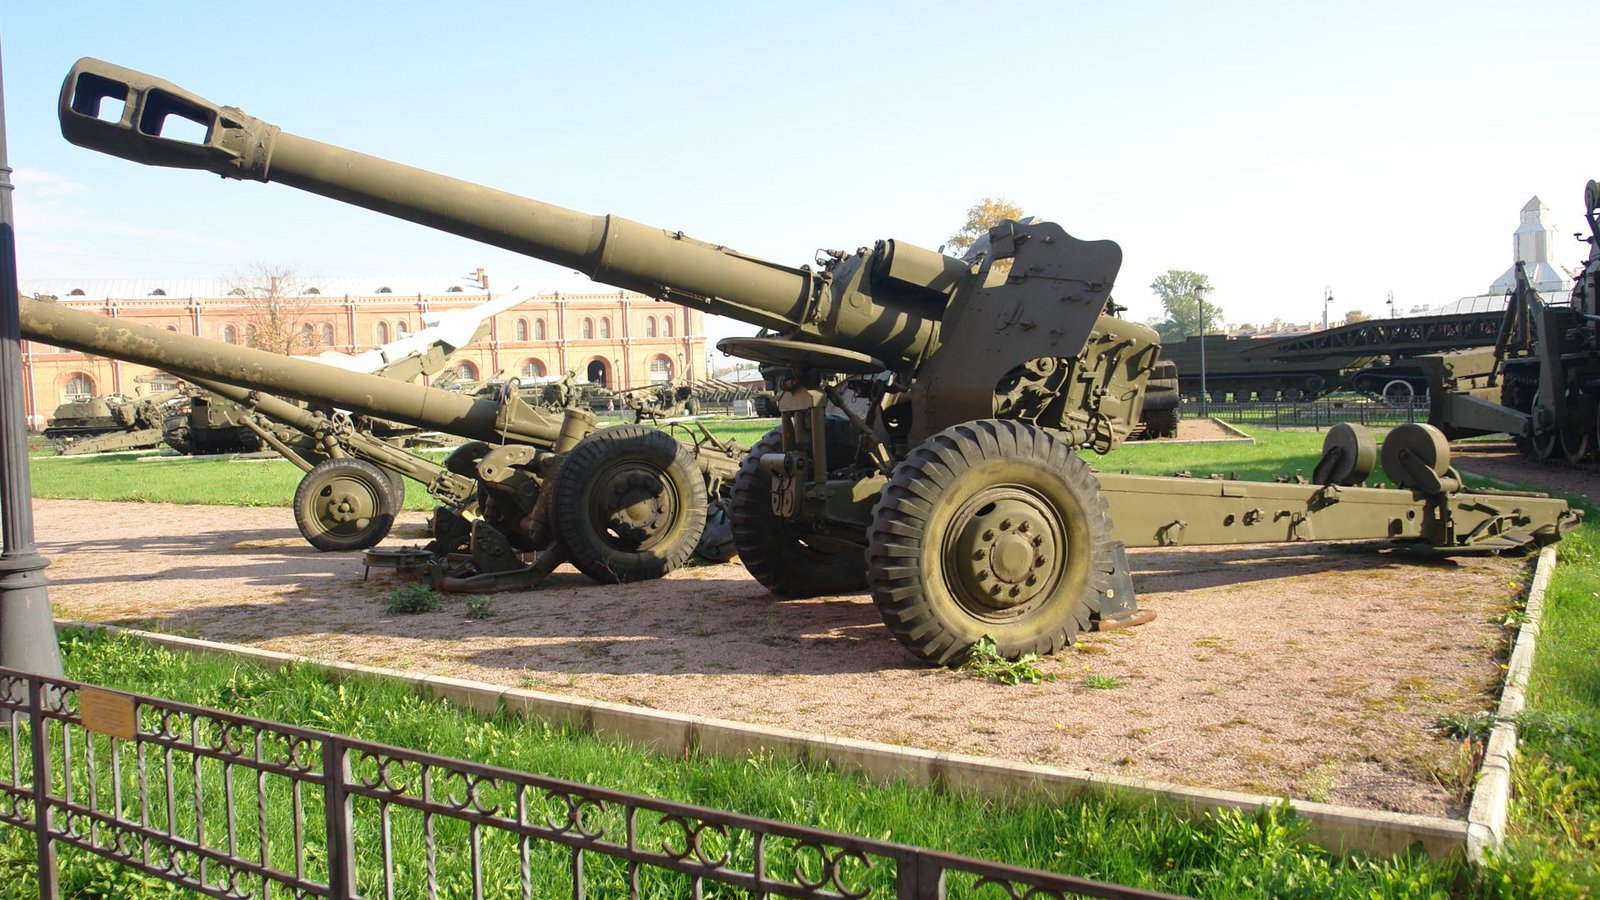 Ukraine: Die 152-mm-Haubitze M1955 oder D-20 ist eine Haubitze, die ab 1947 in der Sowjetunion in Dienst gestellt wurde. Im Westen wurde sie unter dem Namen M1955 bekannt, da sie erstmals 1955 beobachtet wurde. Sie ist bei den ukrainischen  Streitkräften  im Einsatz.Foto: Wikipedia commons/George Shuklin/CC BY-SA 1.0